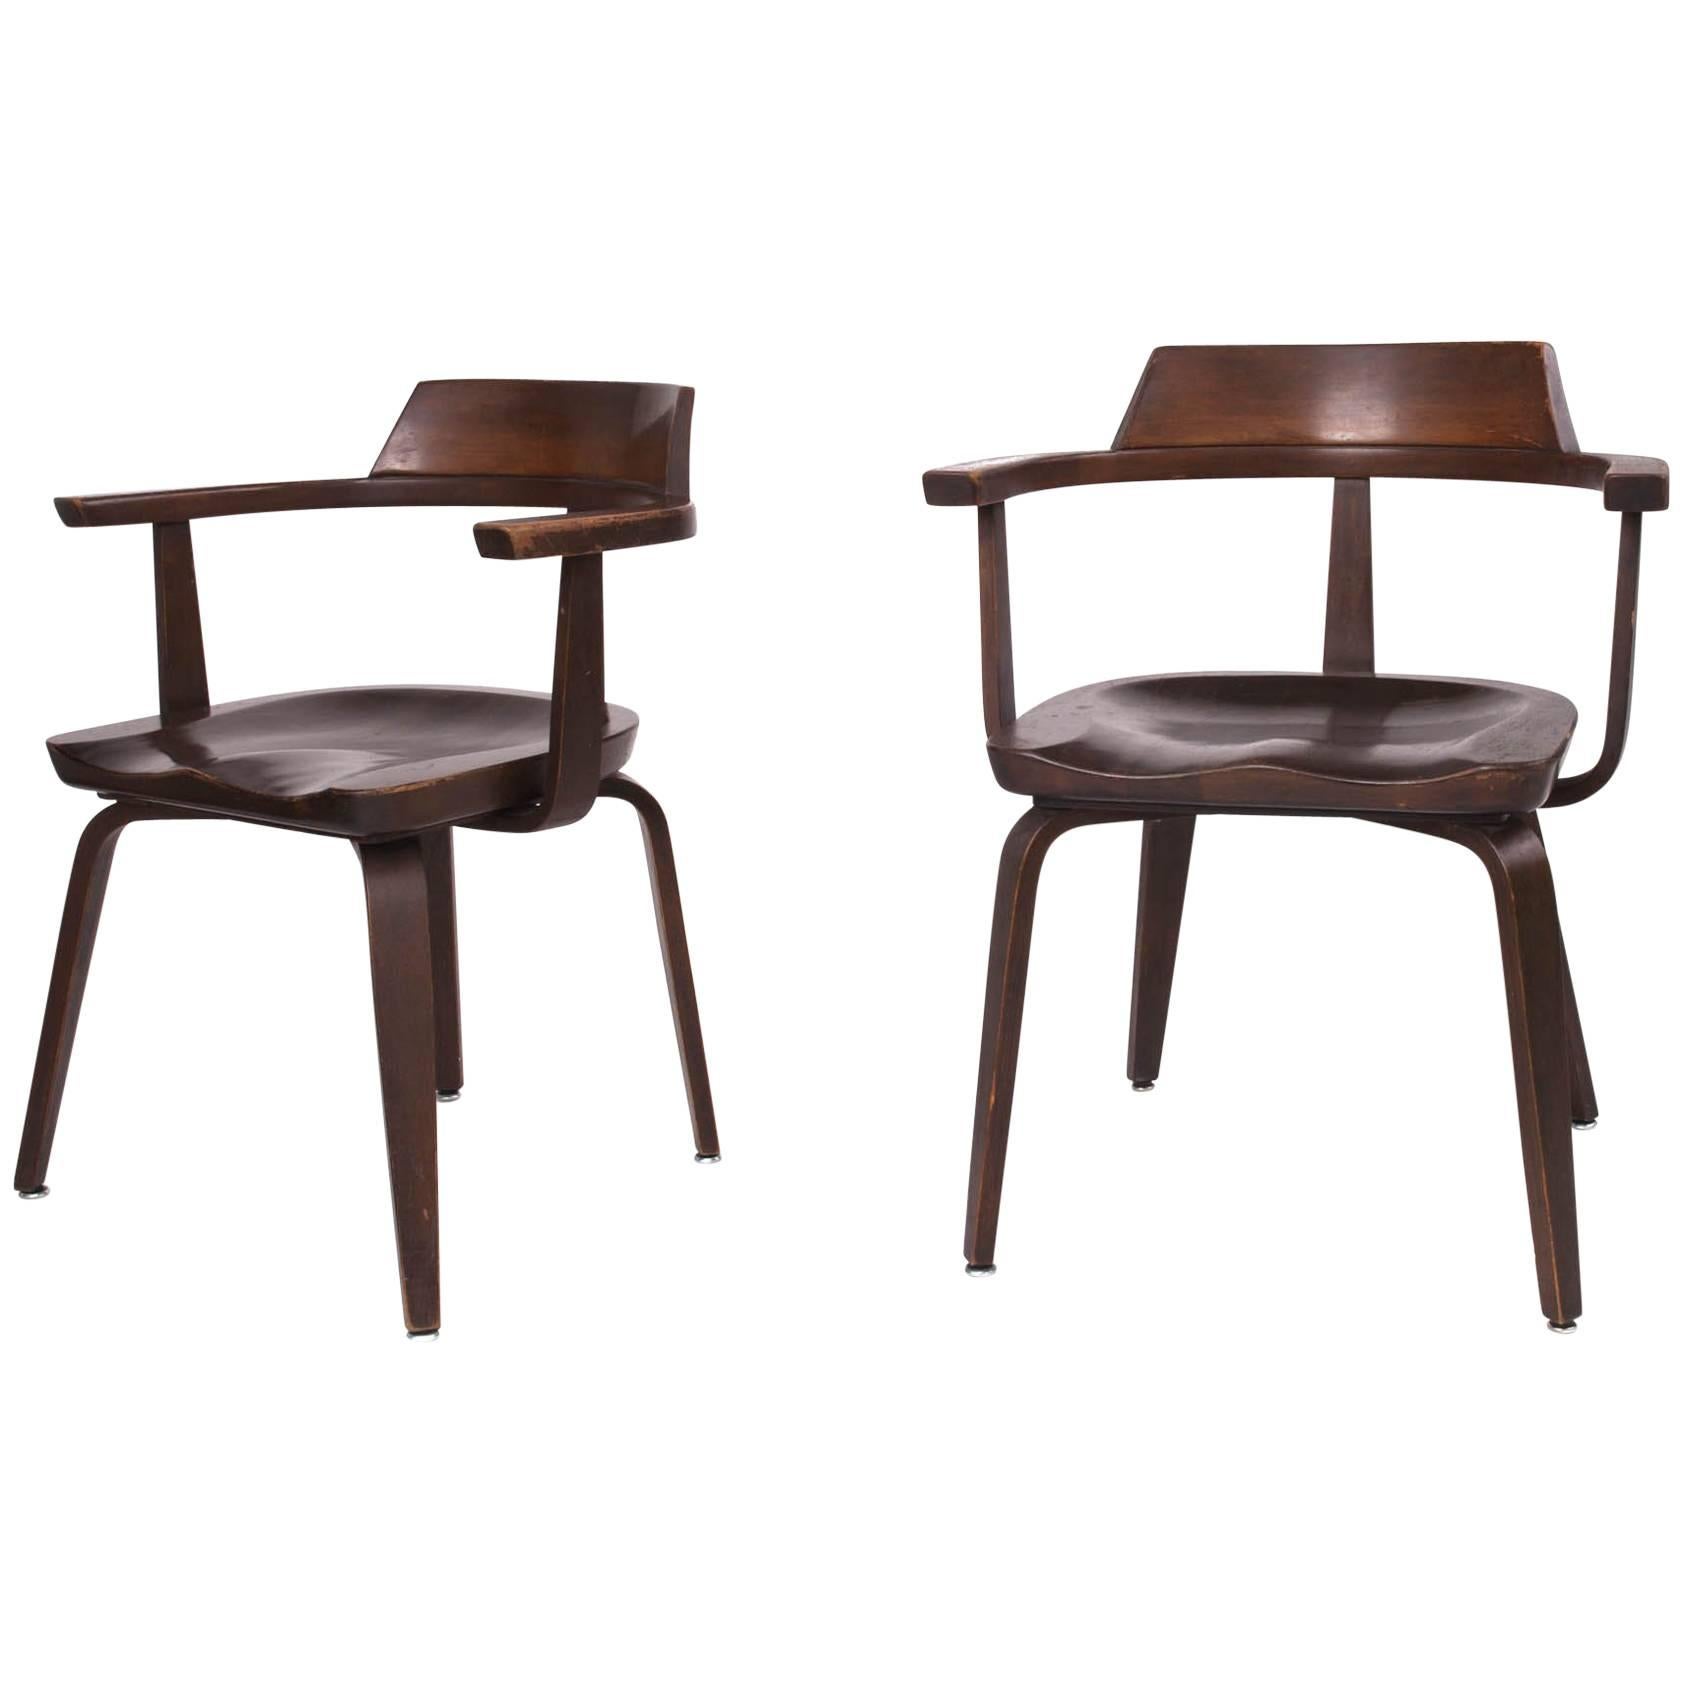 Rare Pair of Bauhaus W199 Chairs by Walter Gropius